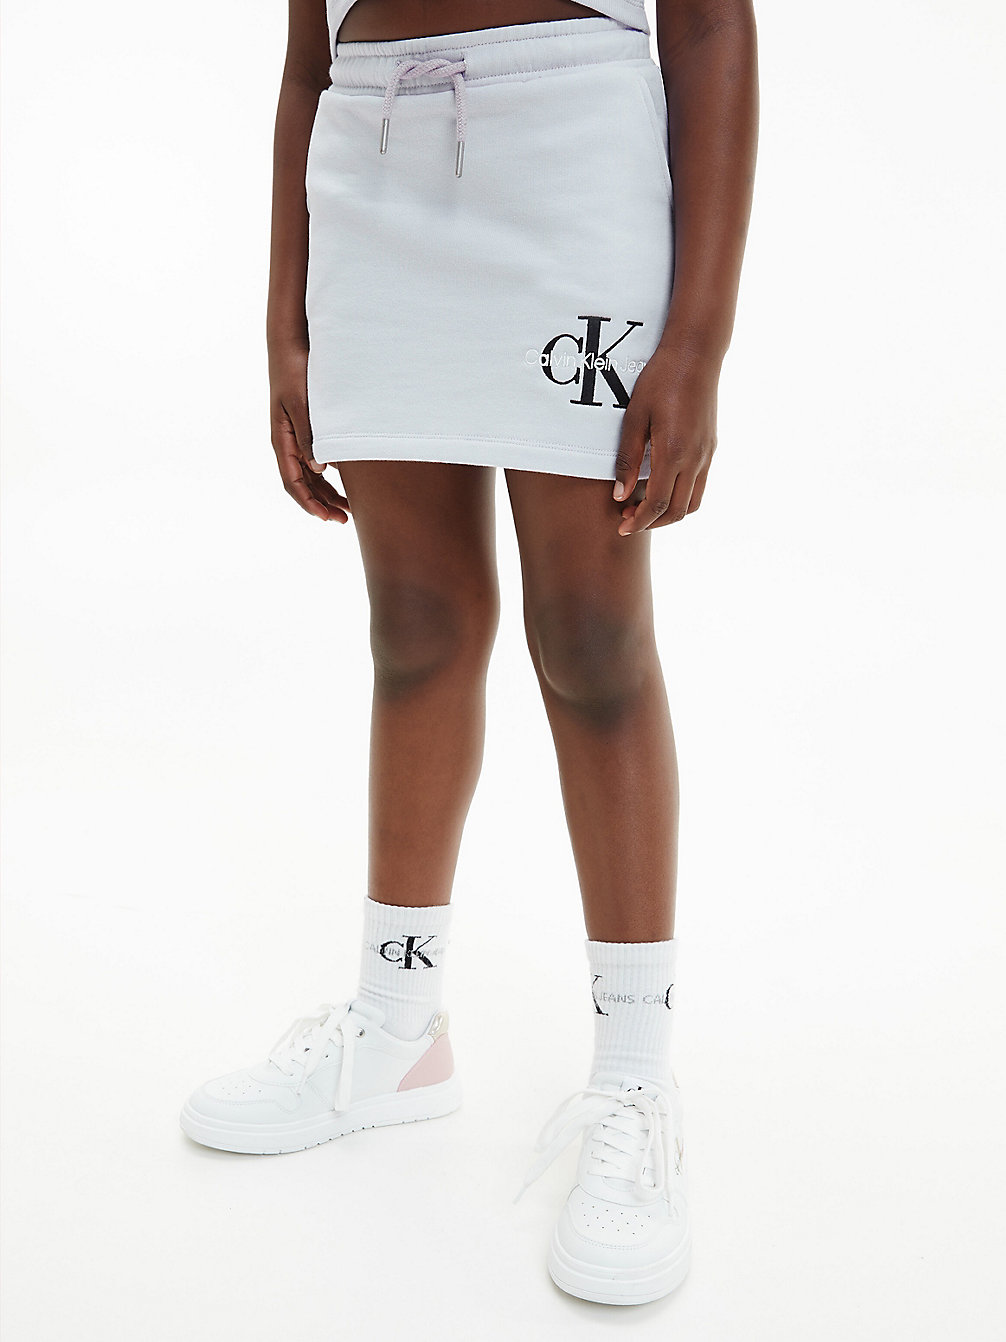 LAVENDER ICE Cotton Terry Logo Skirt undefined girls Calvin Klein